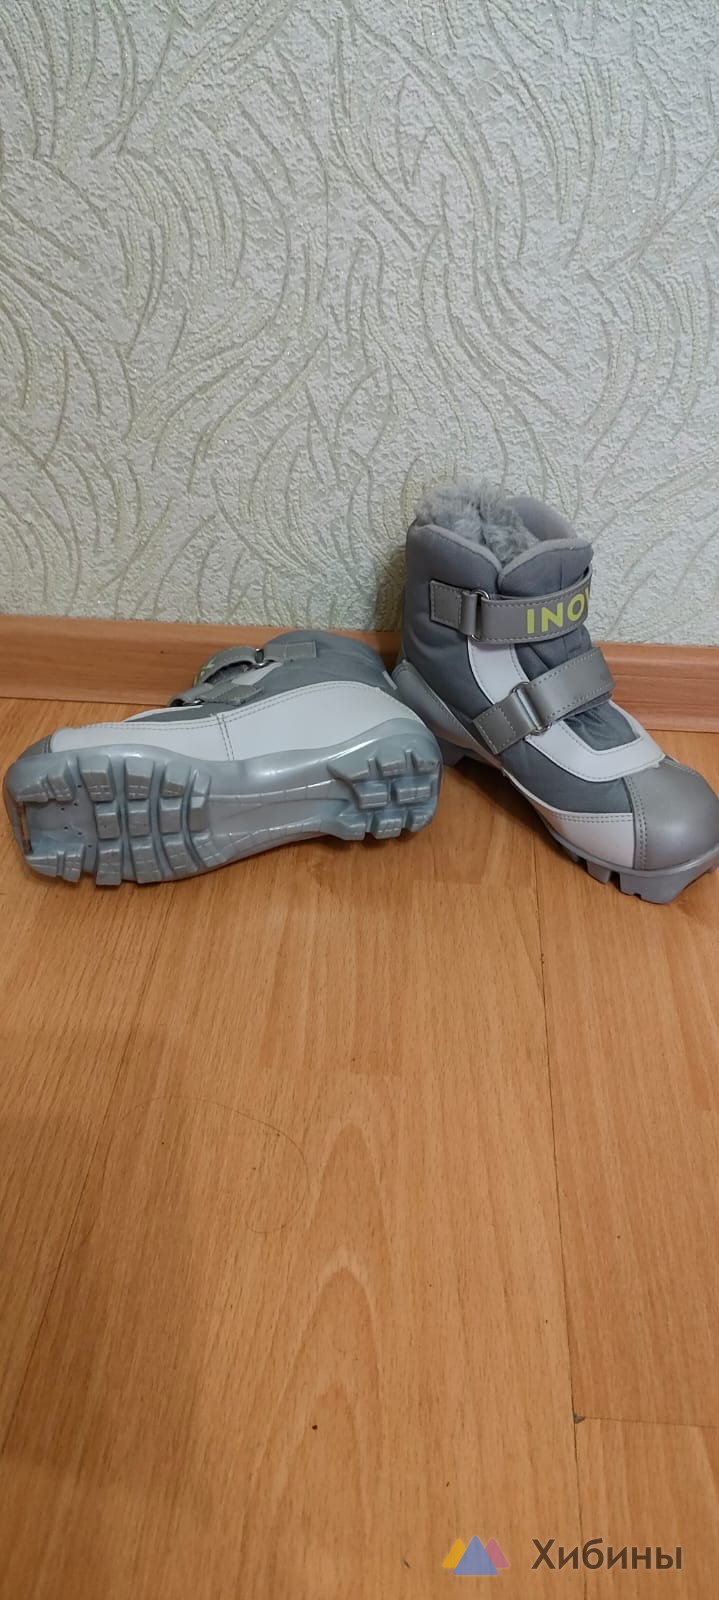 Лыжные ботинки детские INOVIK XC120, 34 размер